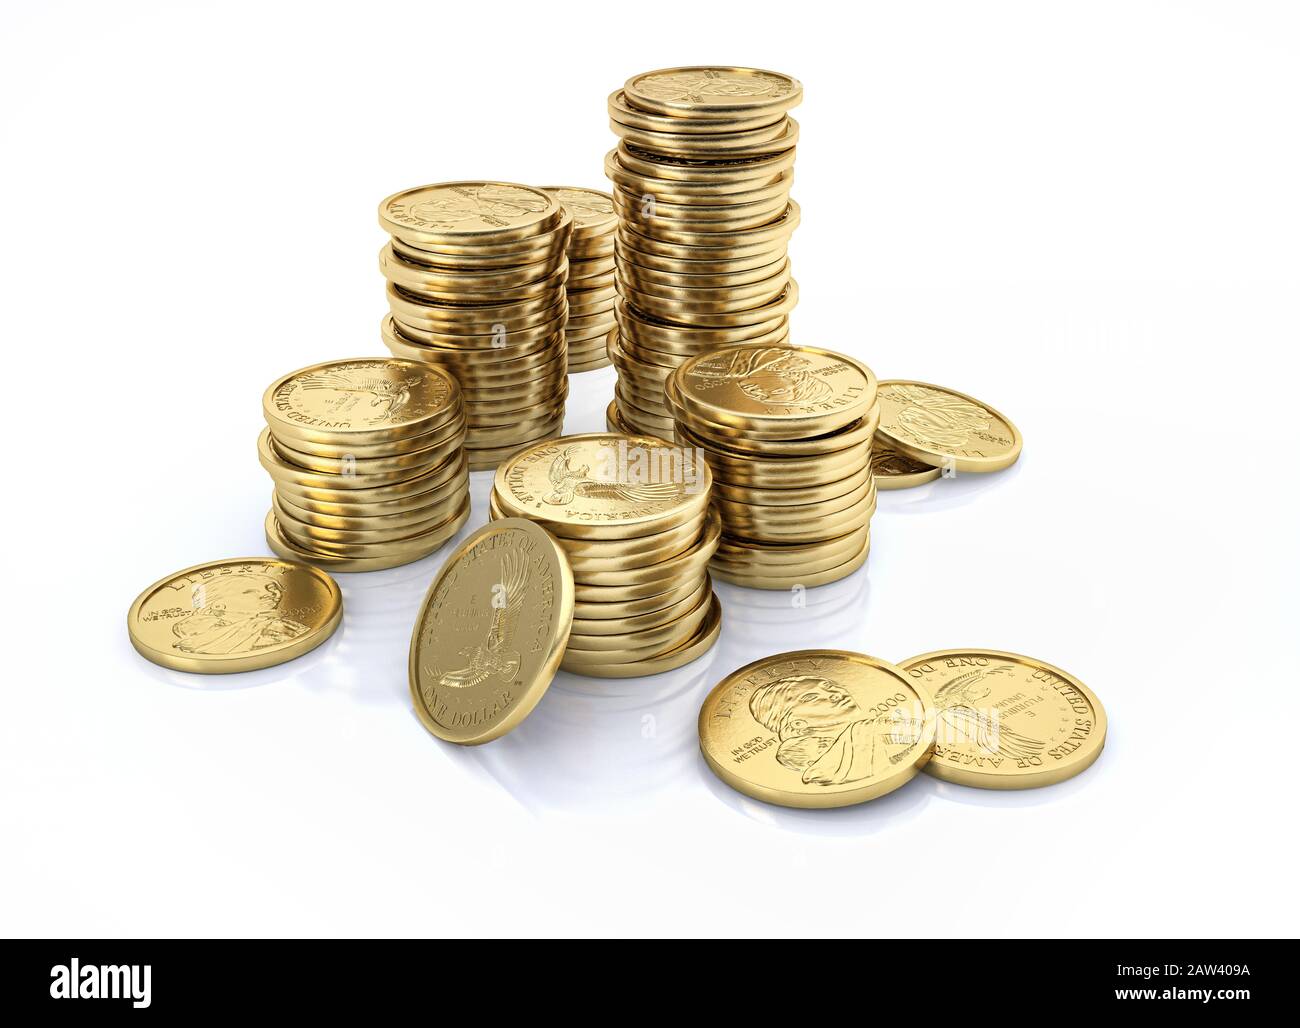 Argent. Piles de pièces d'or en dollars américains. Illustration tridimensionnelle sur fond blanc. Banque D'Images